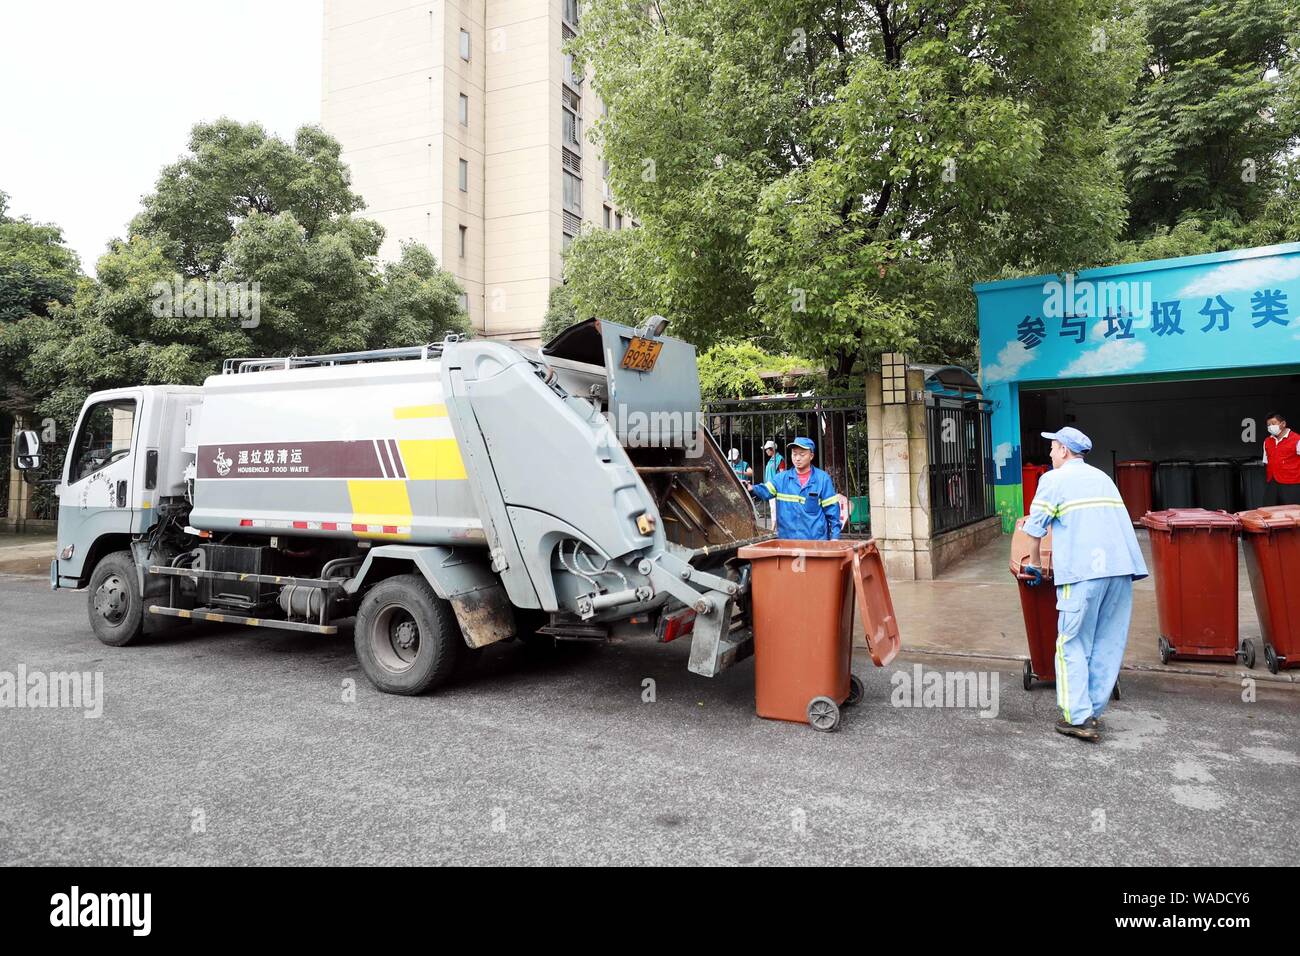 Lavoratori cinesi mettere contenitori di uso domestico rifiuti alimentari in un camion della spazzatura di fronte a una zona residenziale in Cina a Shanghai, 30 giugno 2019. Rifiuti domestici Foto Stock